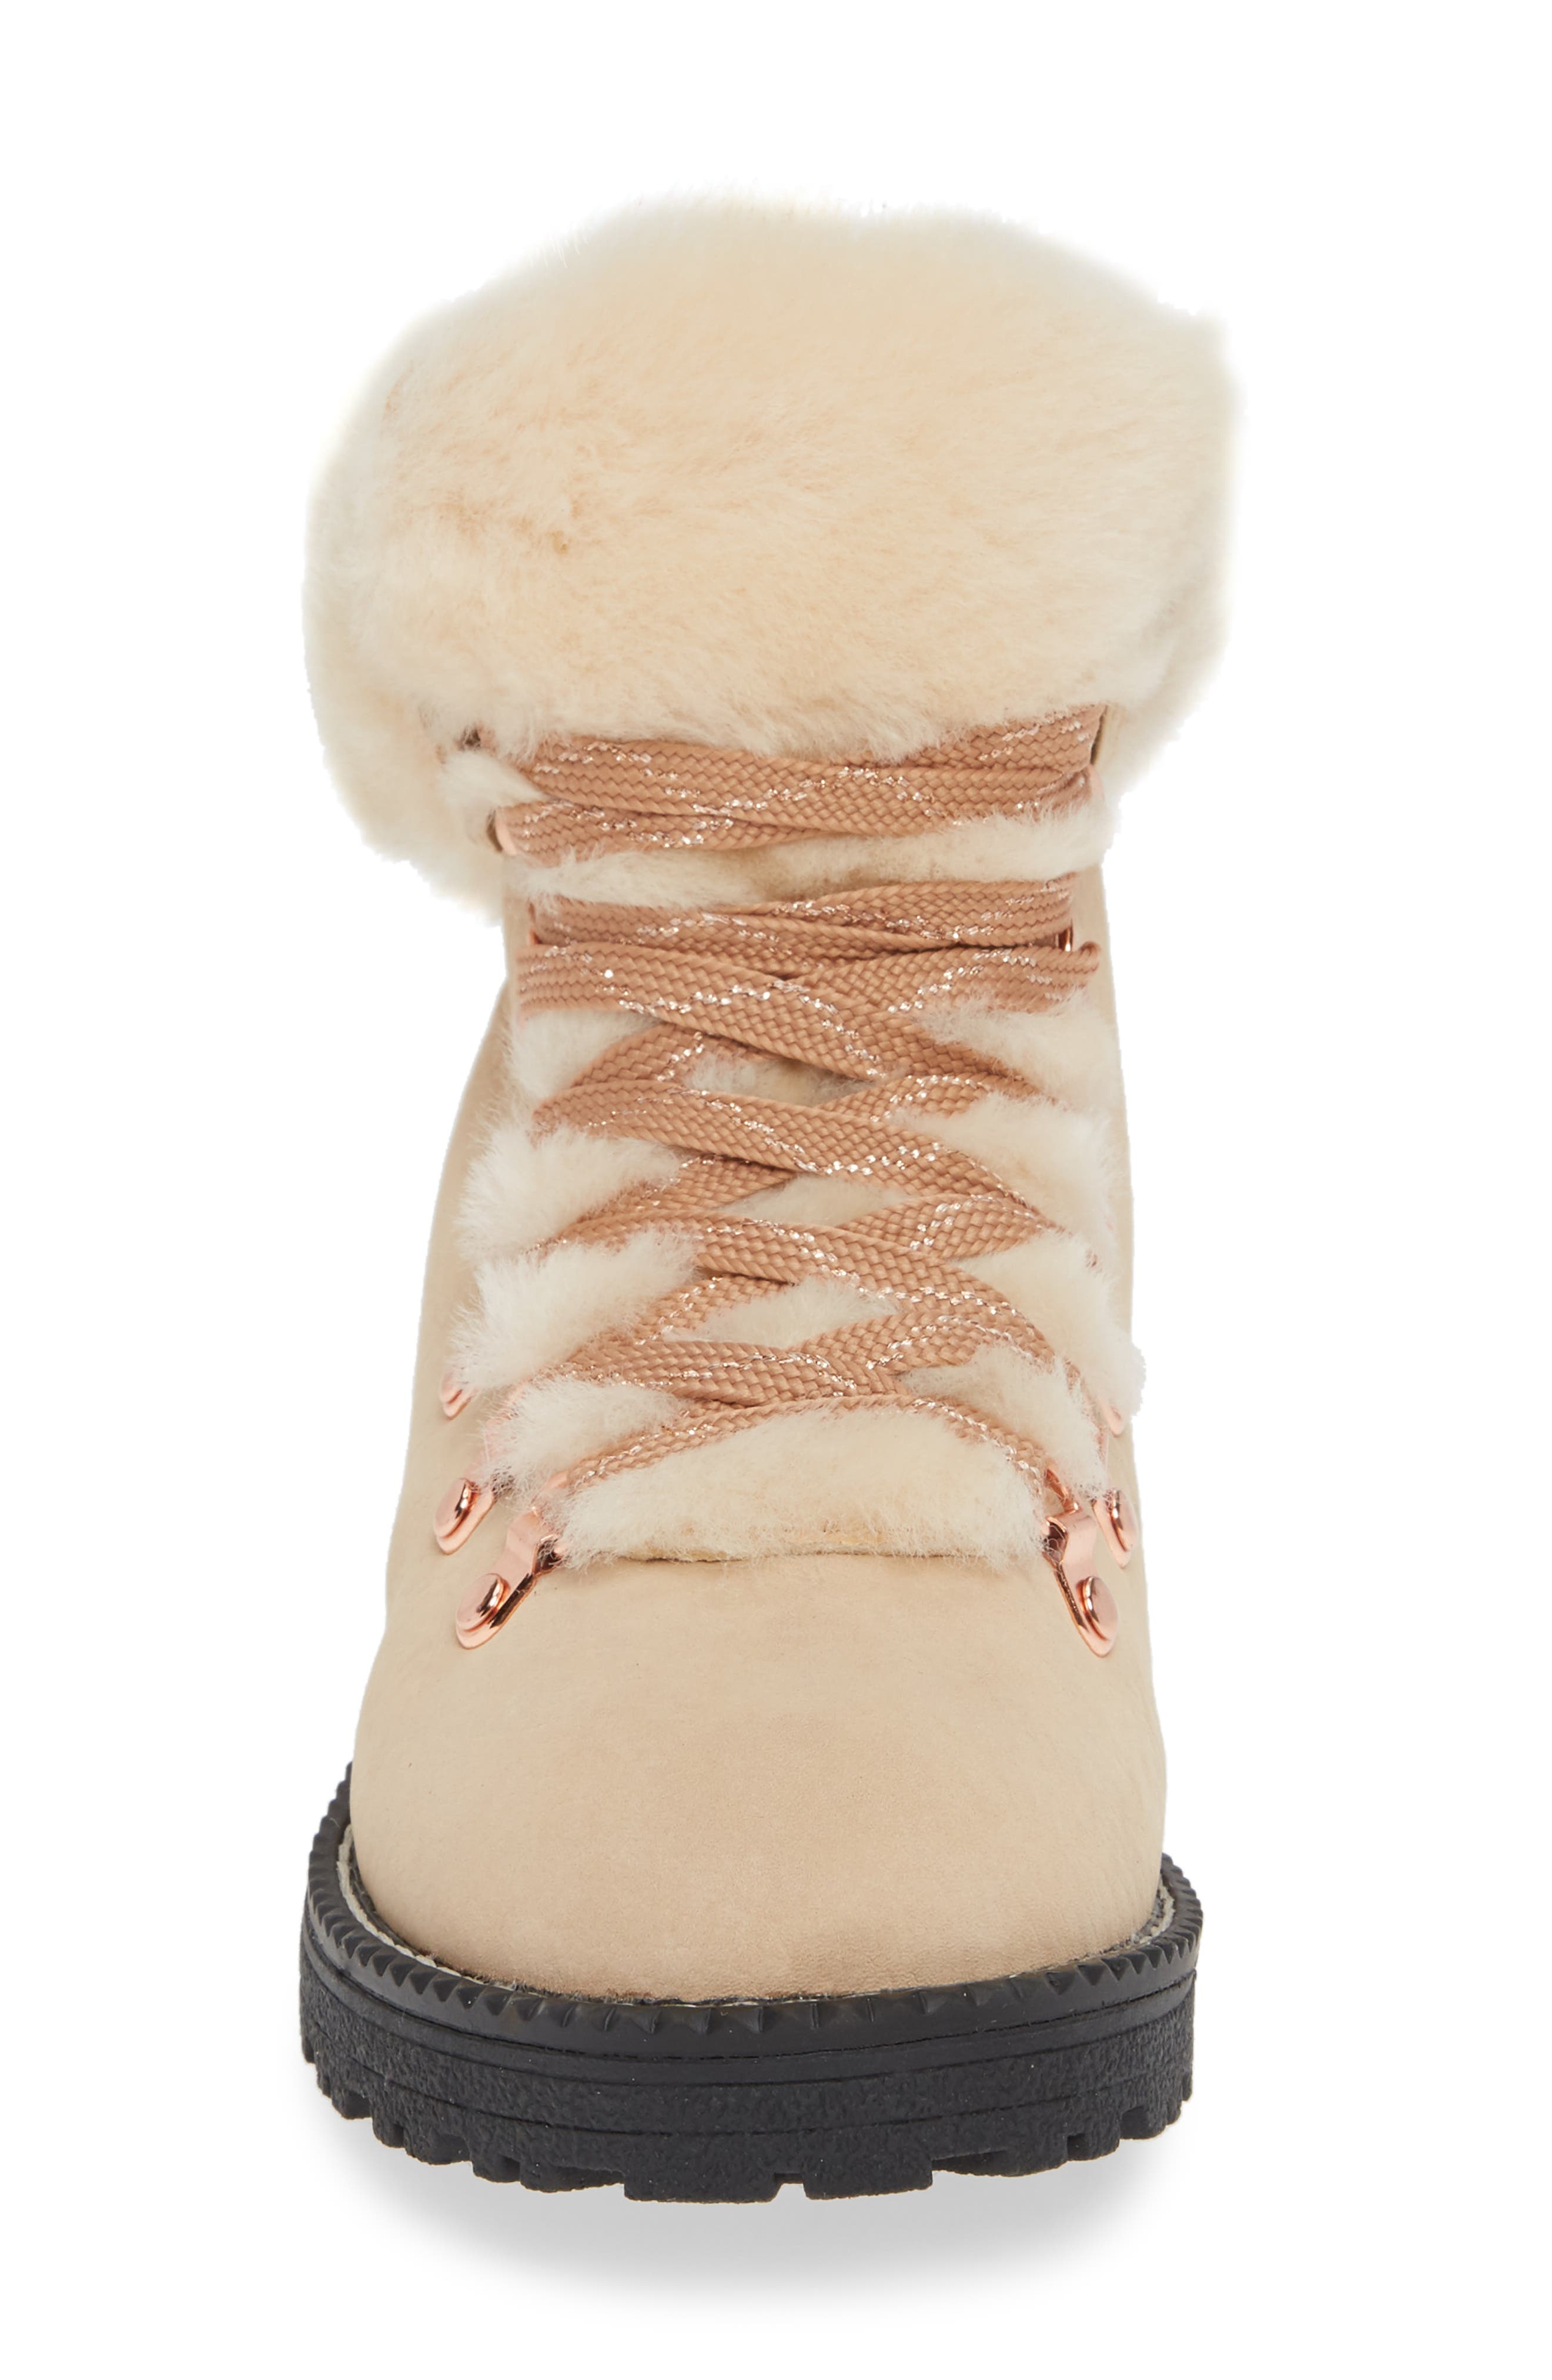 nordic genuine shearling cuff winter boot